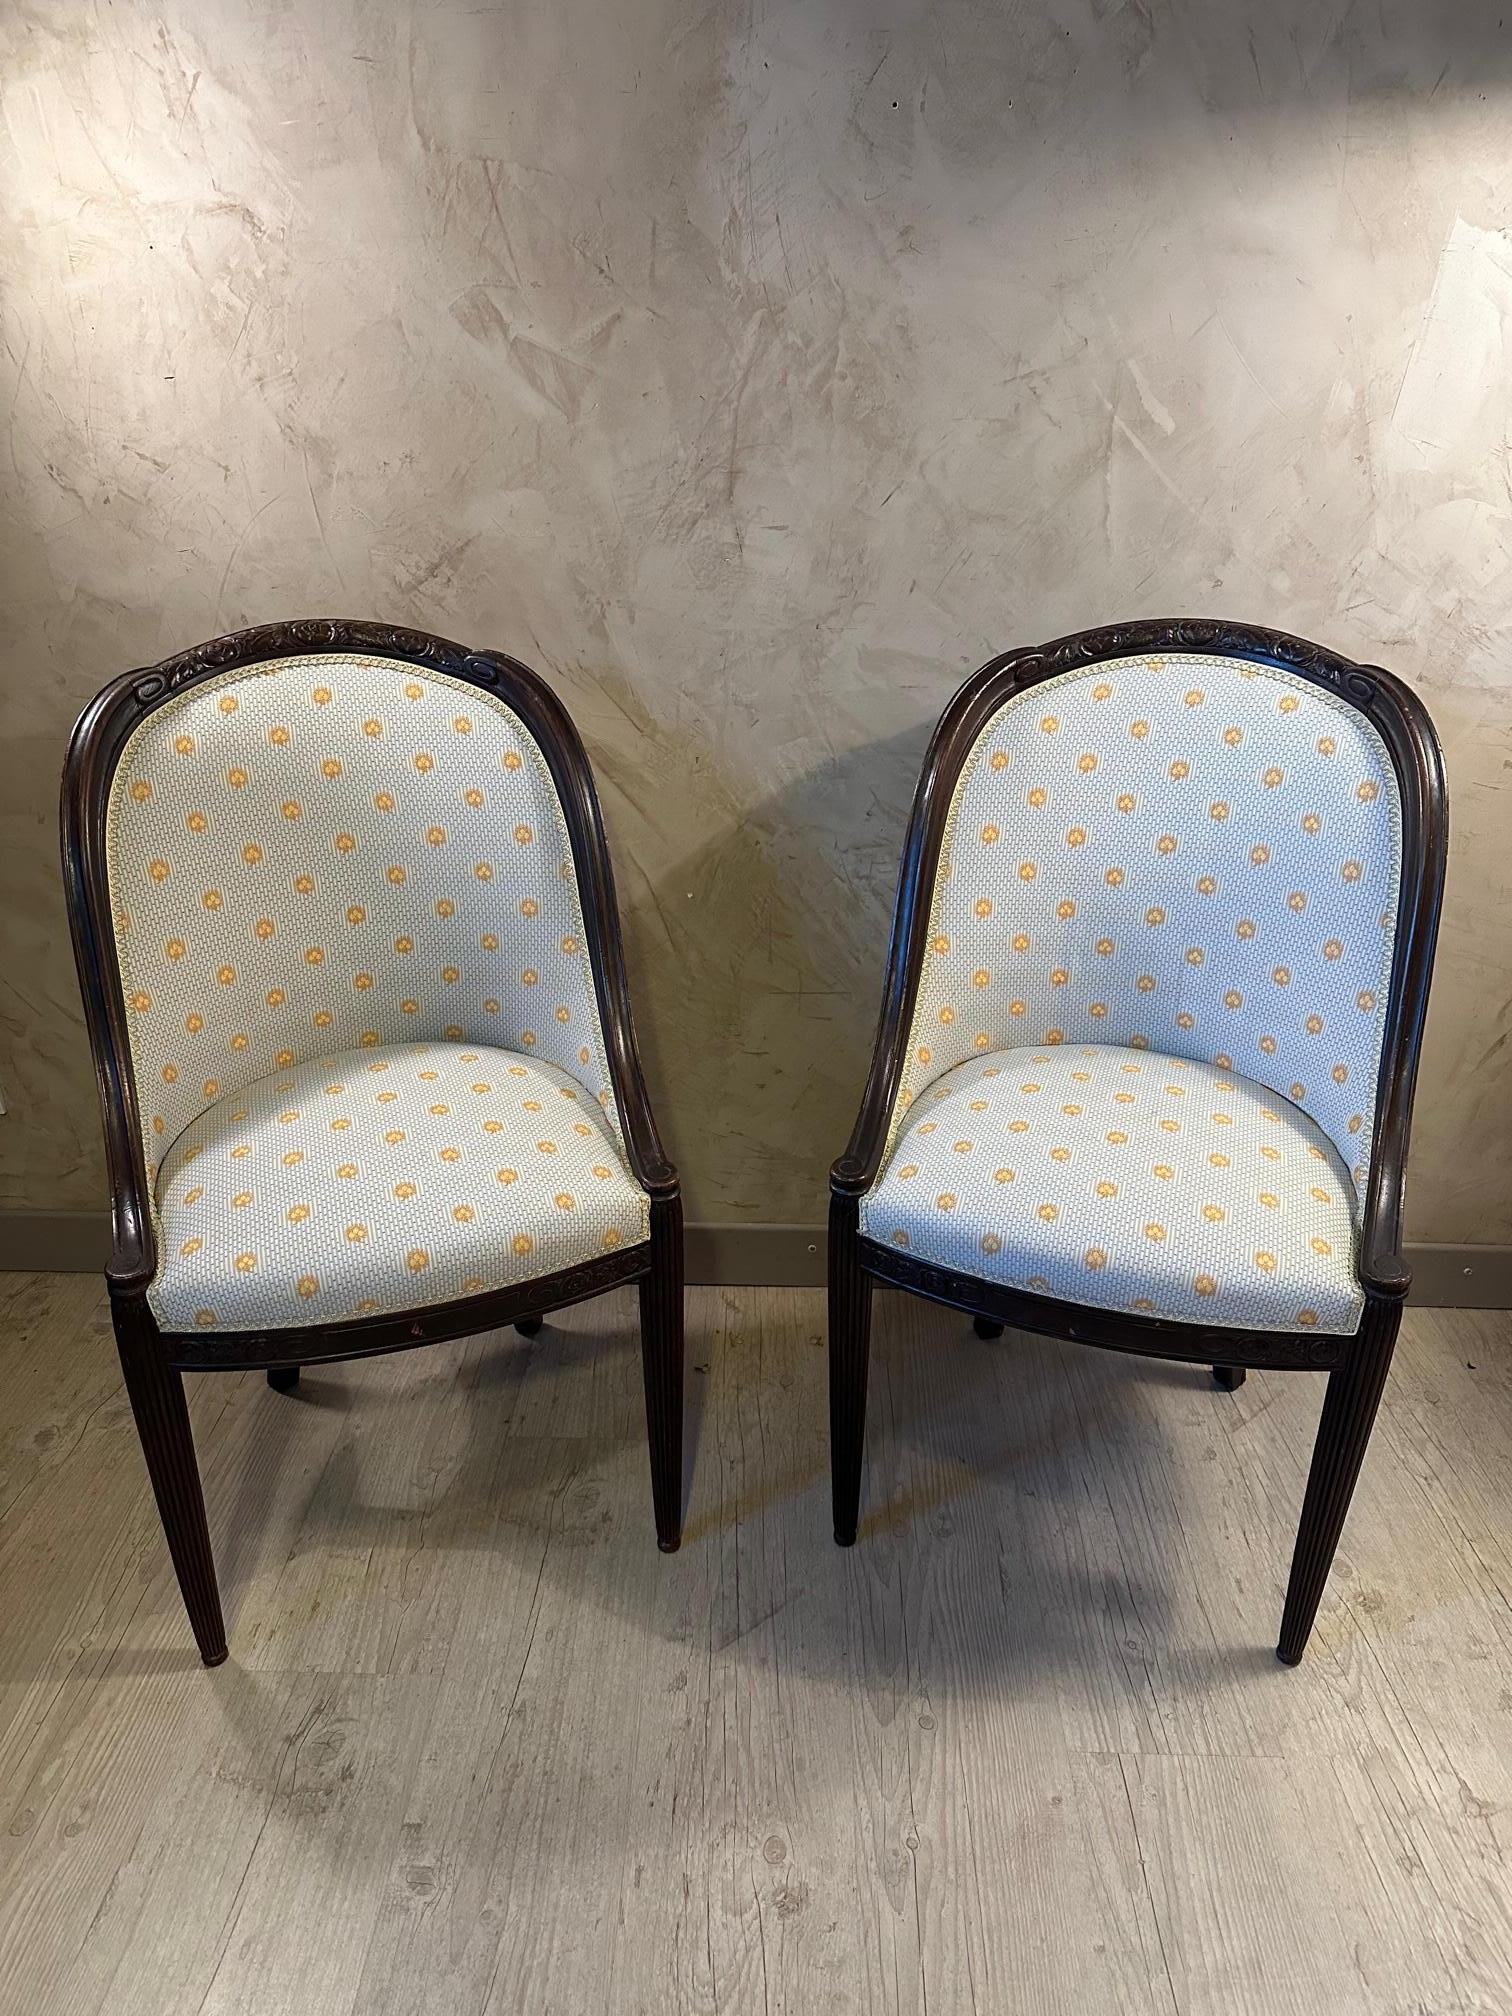 Très belle paire de fauteuils art déco en très bon état datant de 1925. Tissu de coton bleu clair et motif jaune, finition tressage en chaîne plate. Bouquet de fleurs gravées typiques de la période art déco dans le bois sur le haut du dossier et sur